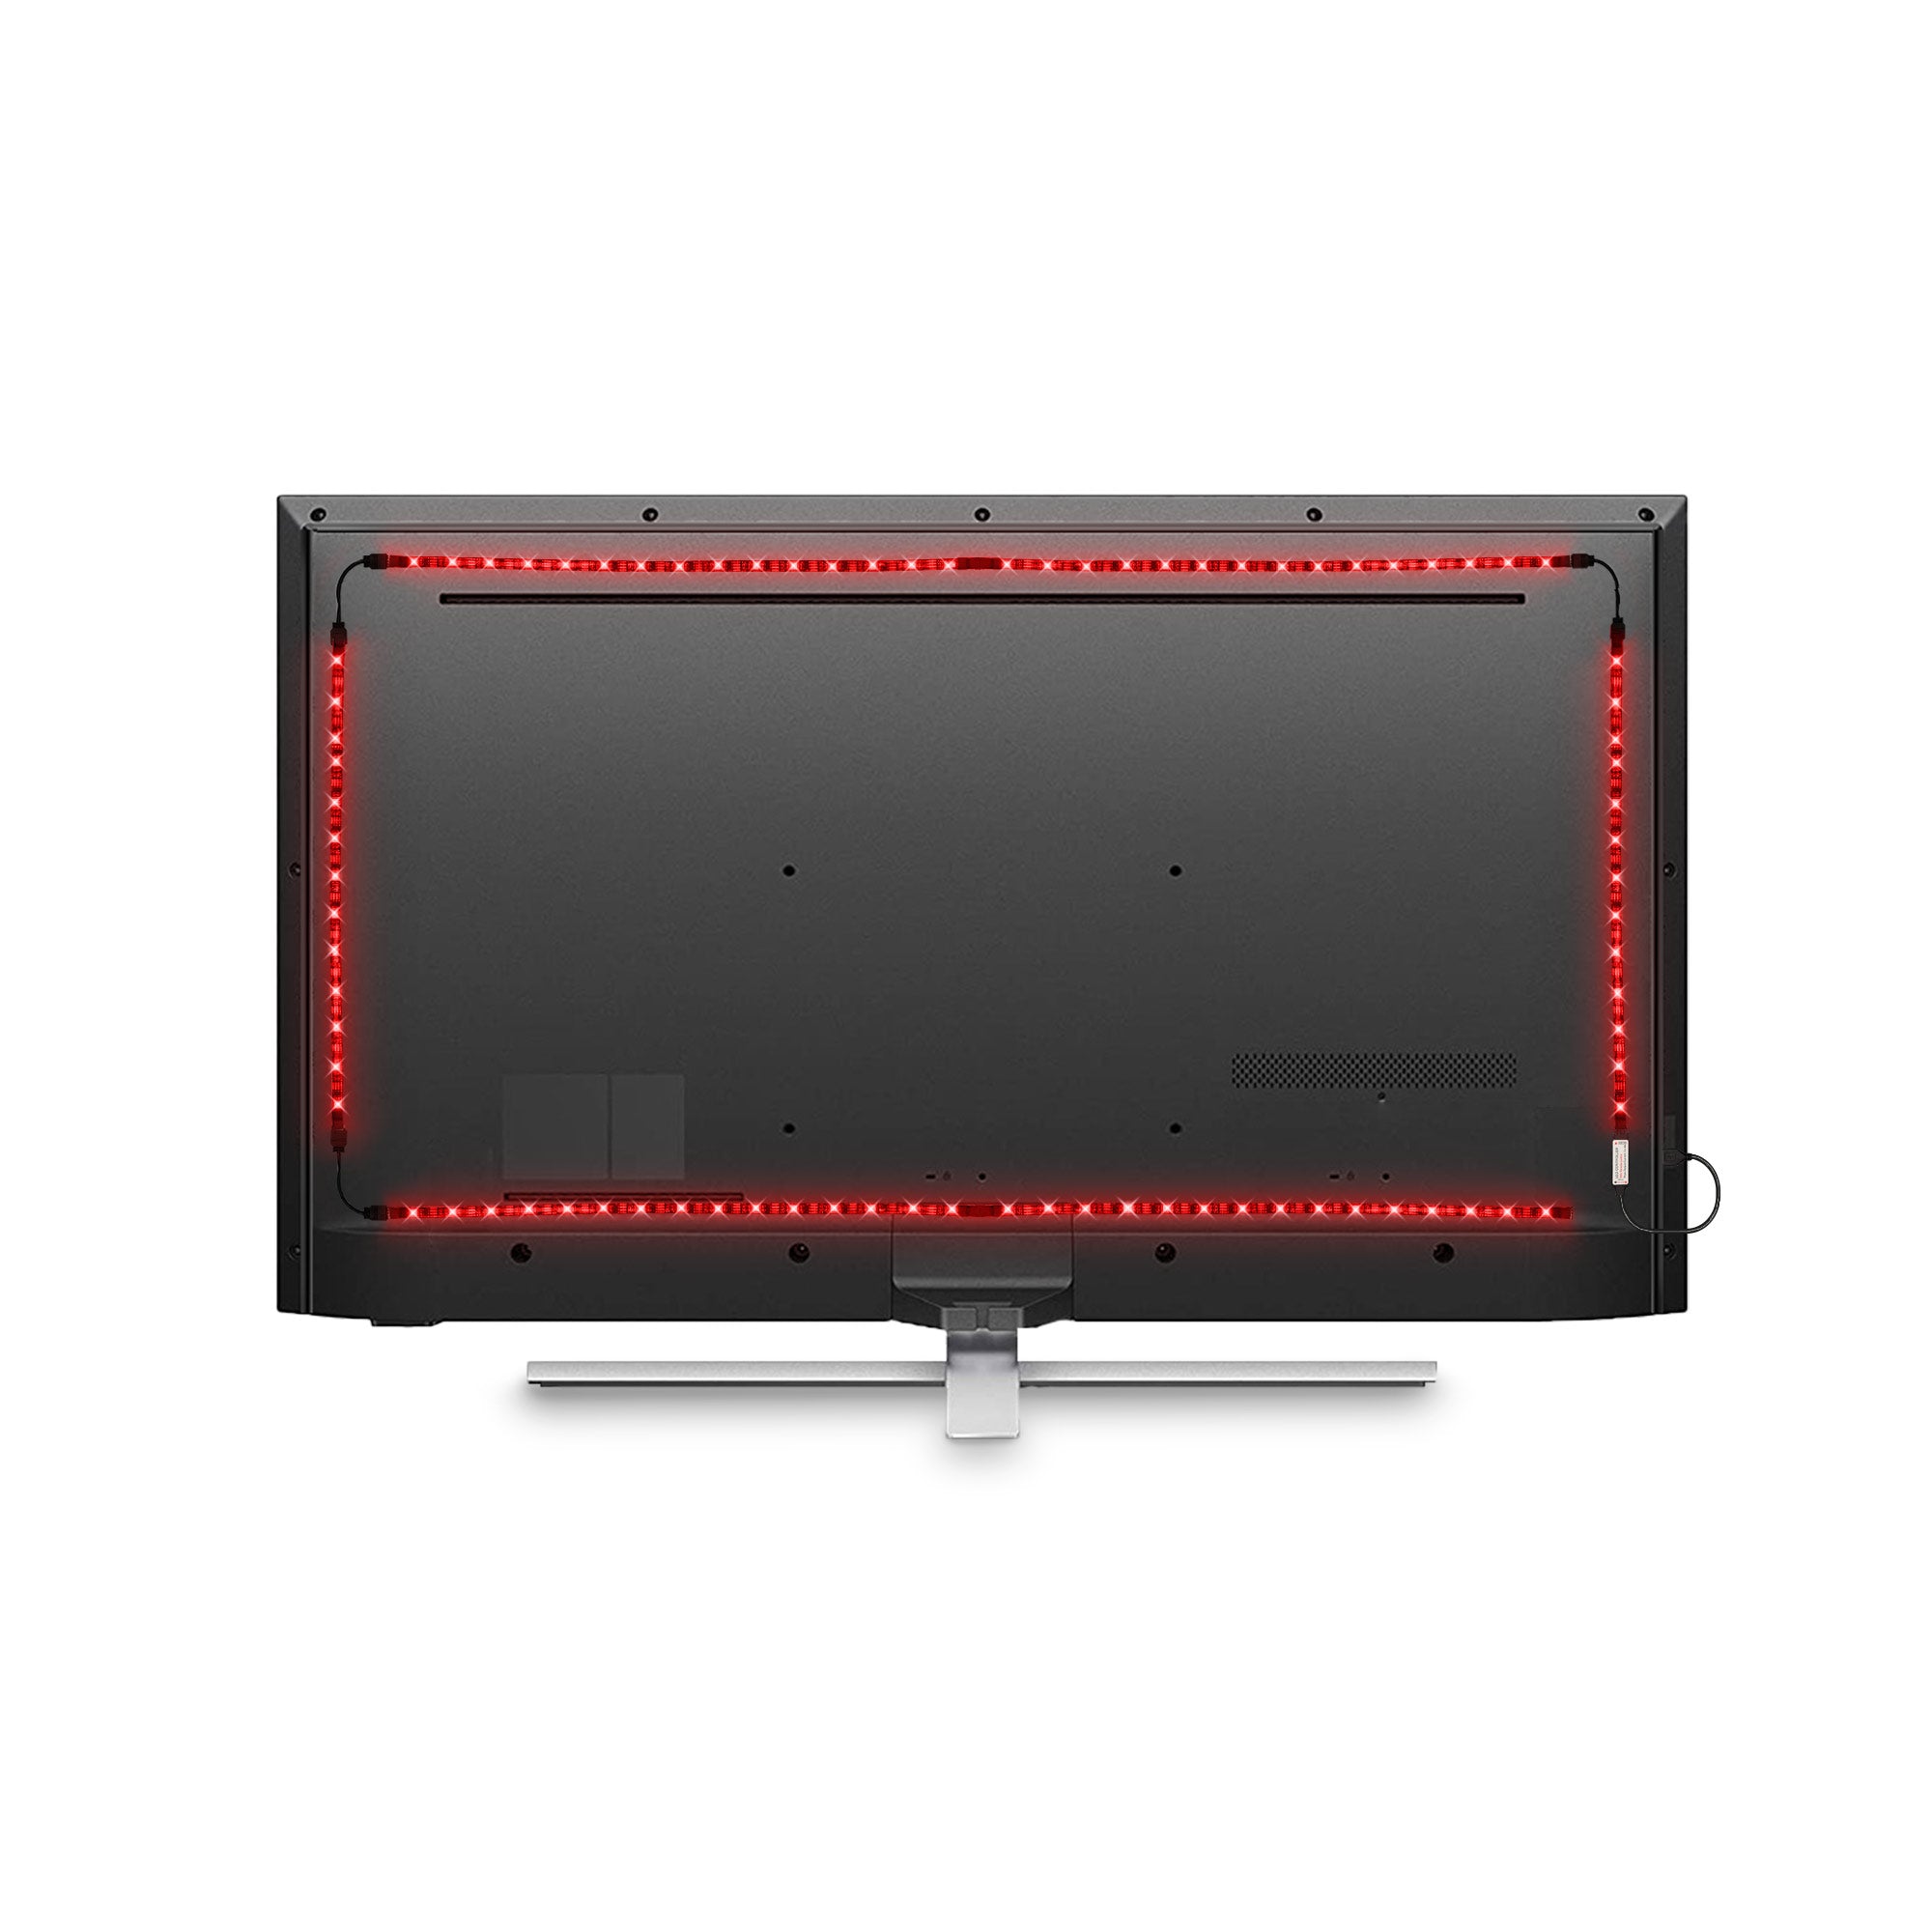 NOUS - Ruban de LED connecté RGB Bluetooth pour TV (2m)